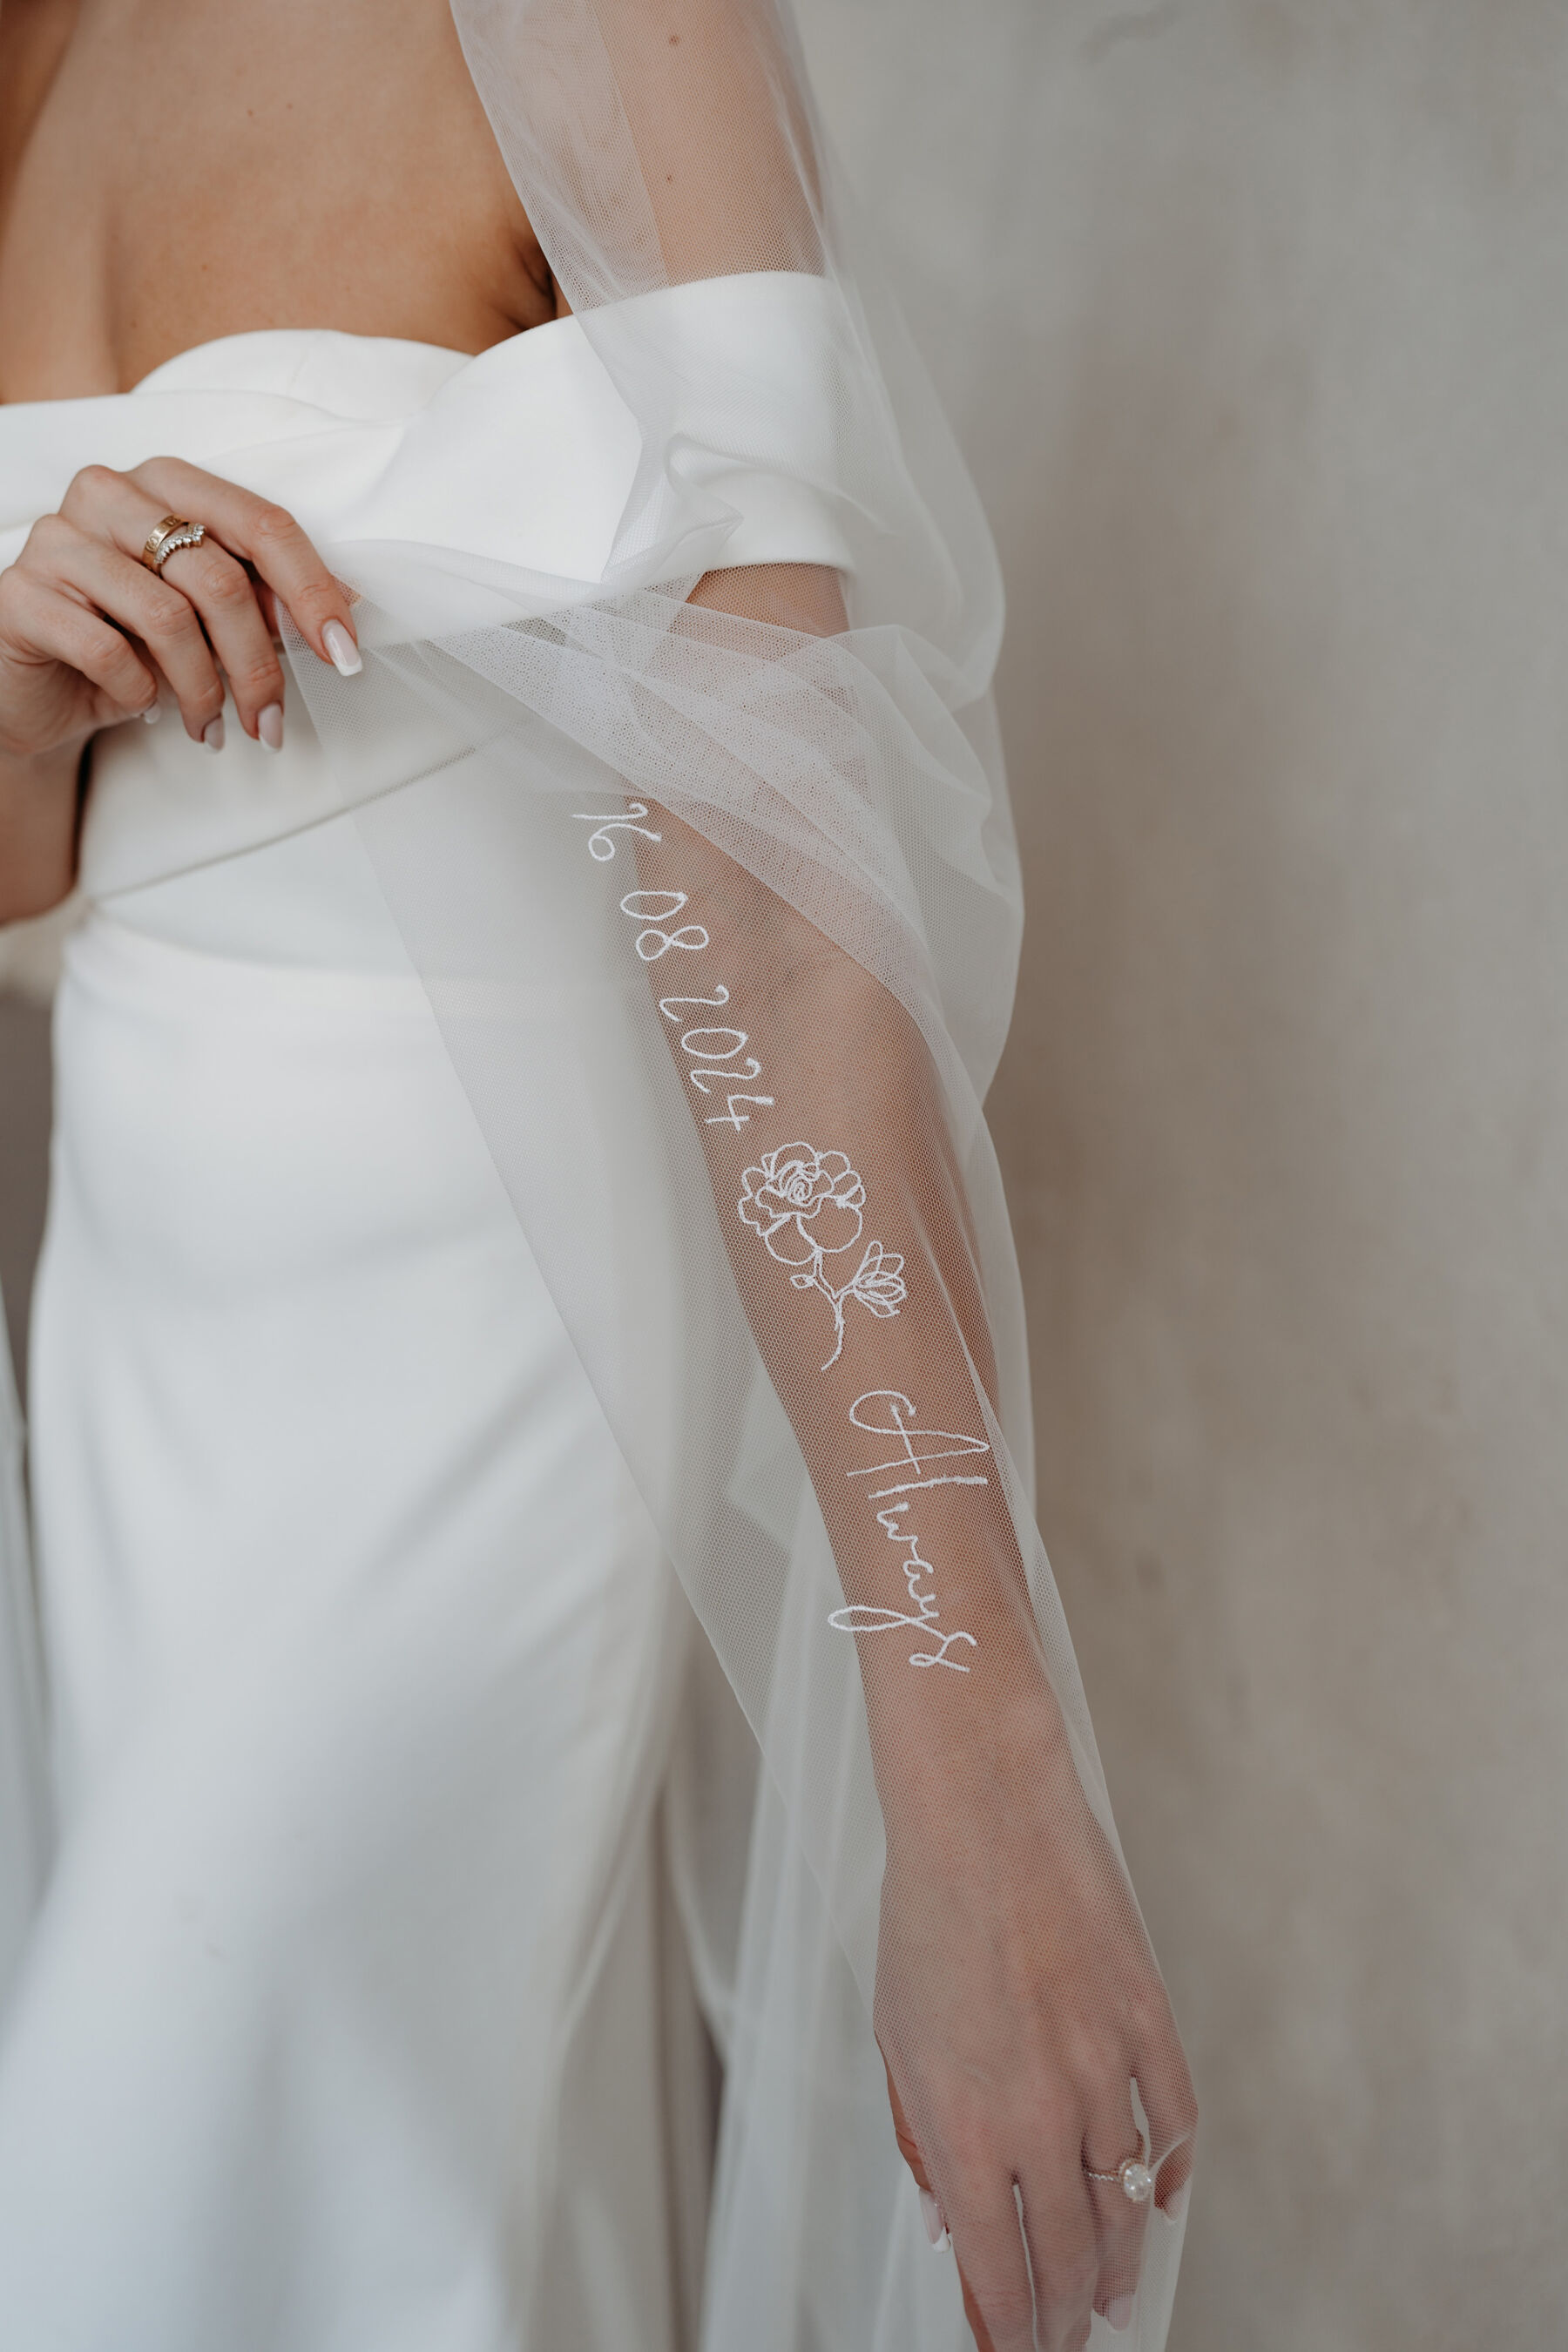 Embroidered wedding veils Rebecca Anne Designs 278 1